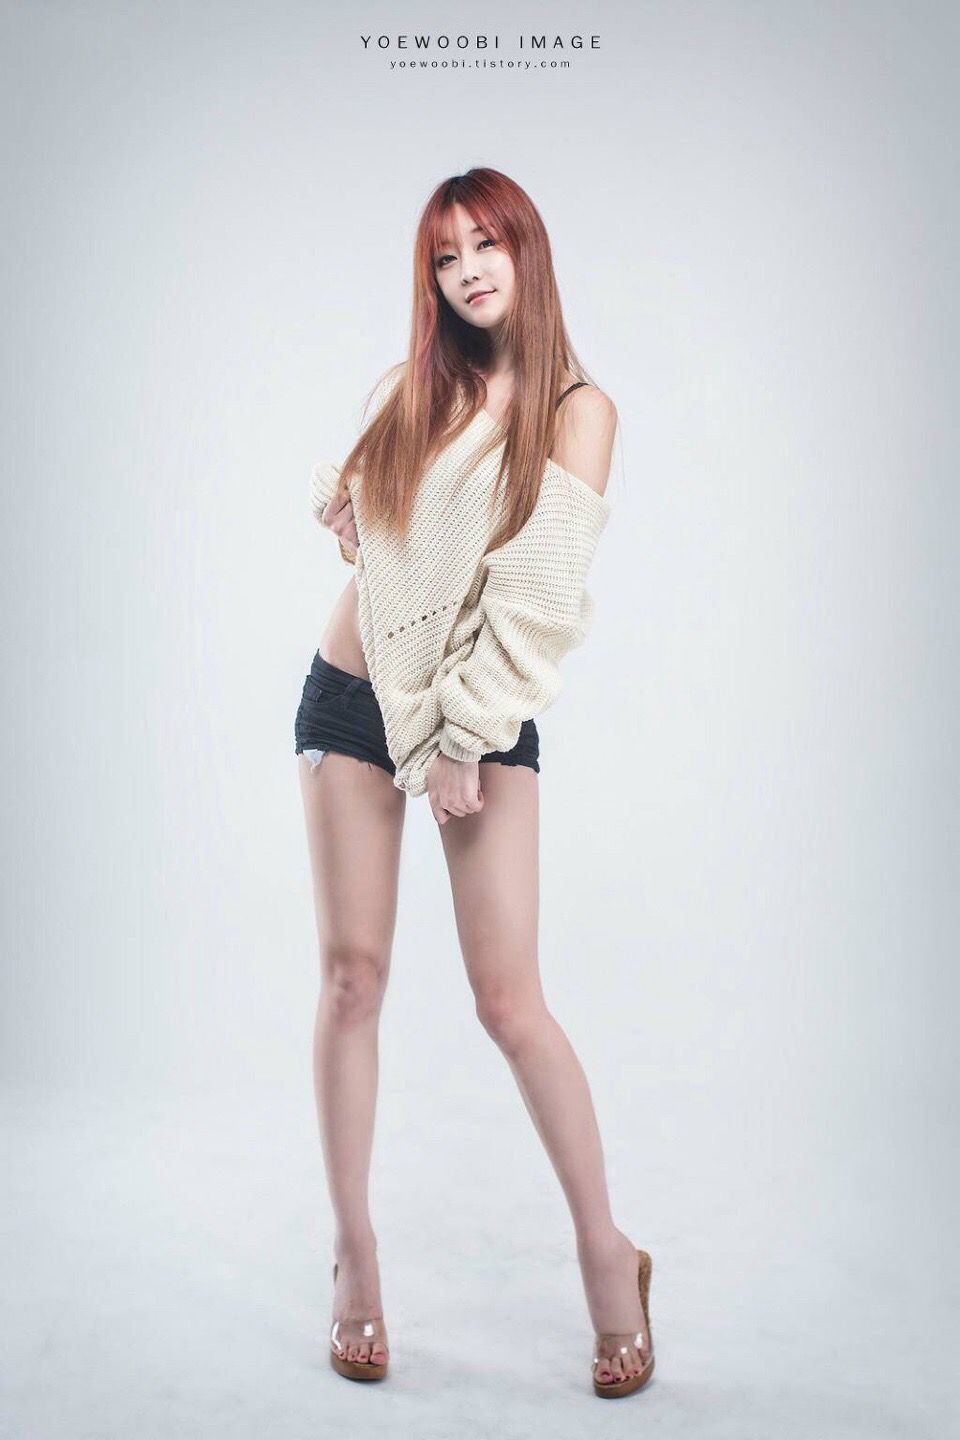 韩国长腿美女热裤搔首弄姿秀美腿